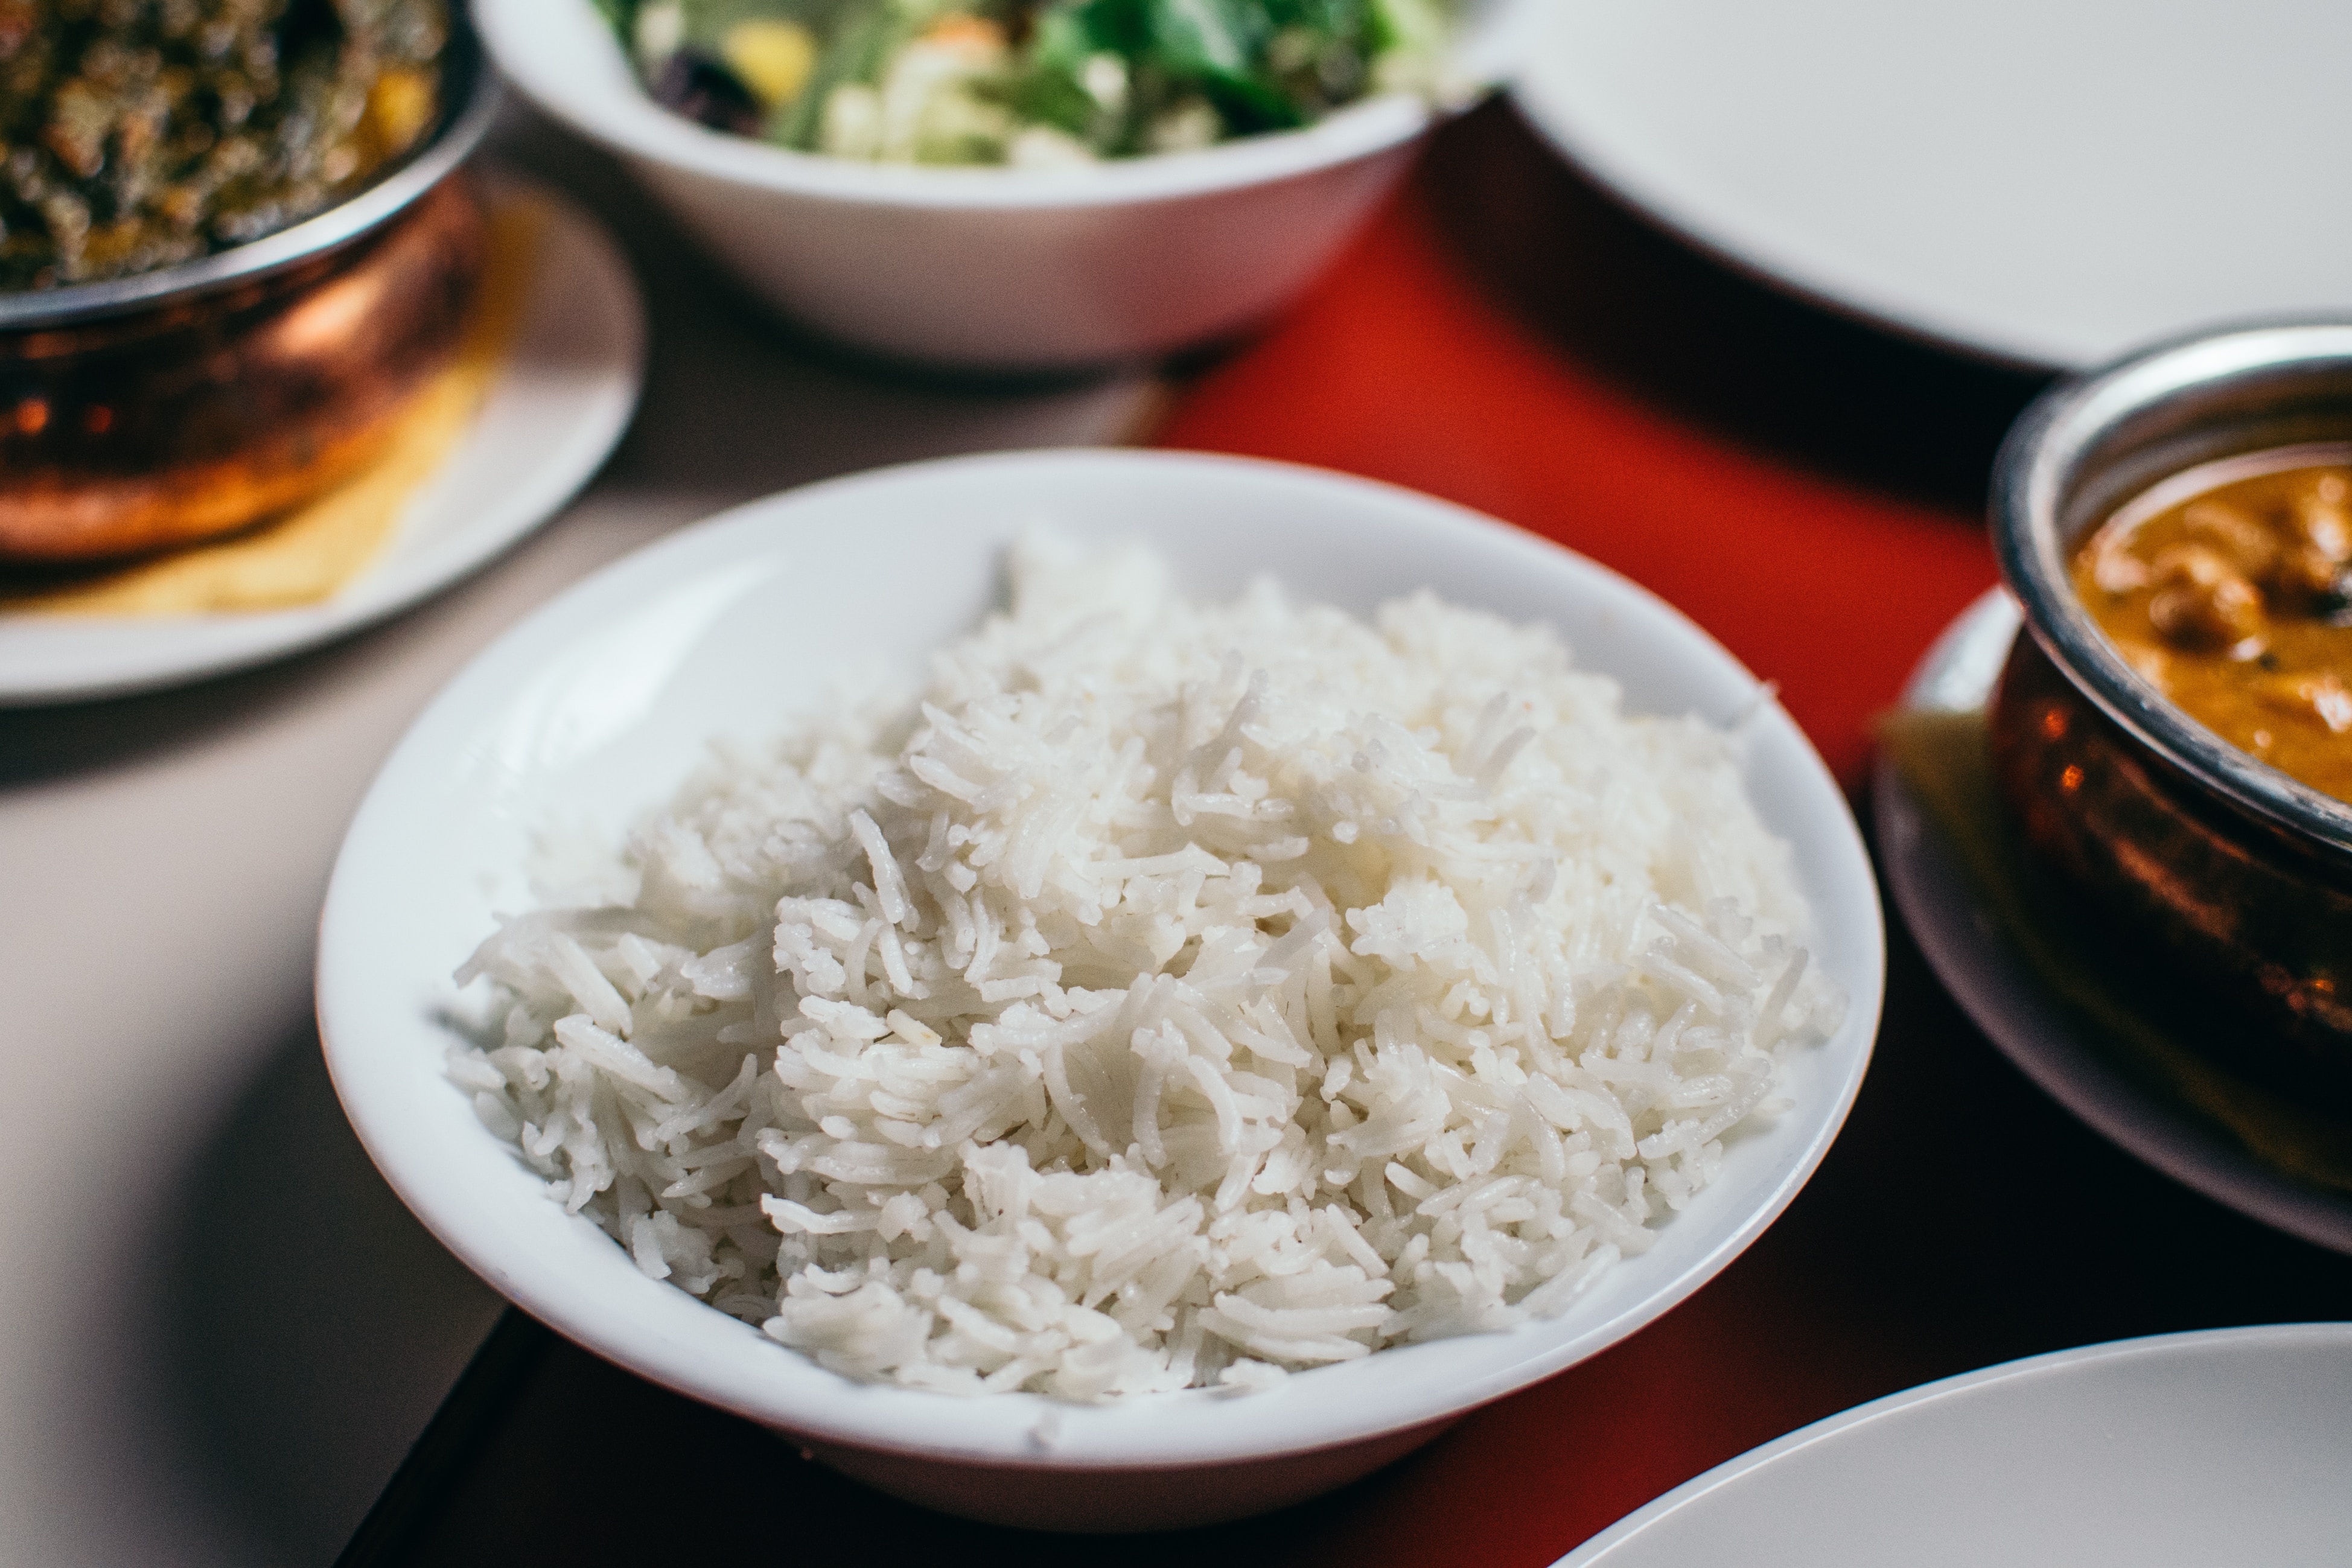 rijstkoker